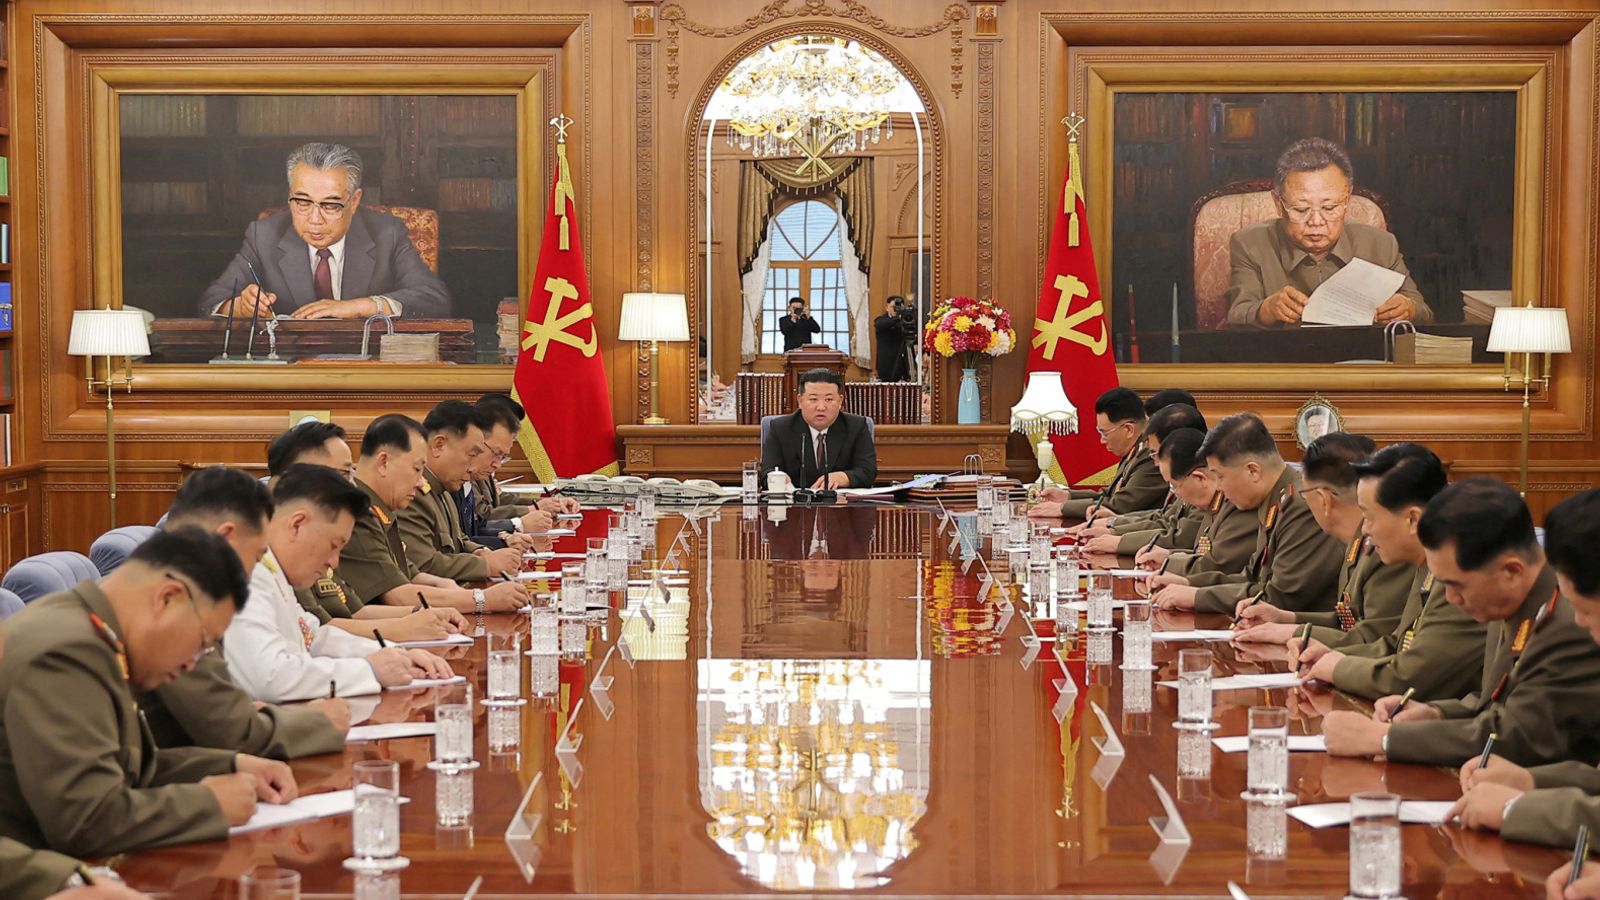 김정은의 사진을 폭풍으로부터 보호하라는 북한의 명령 |  세계 뉴스